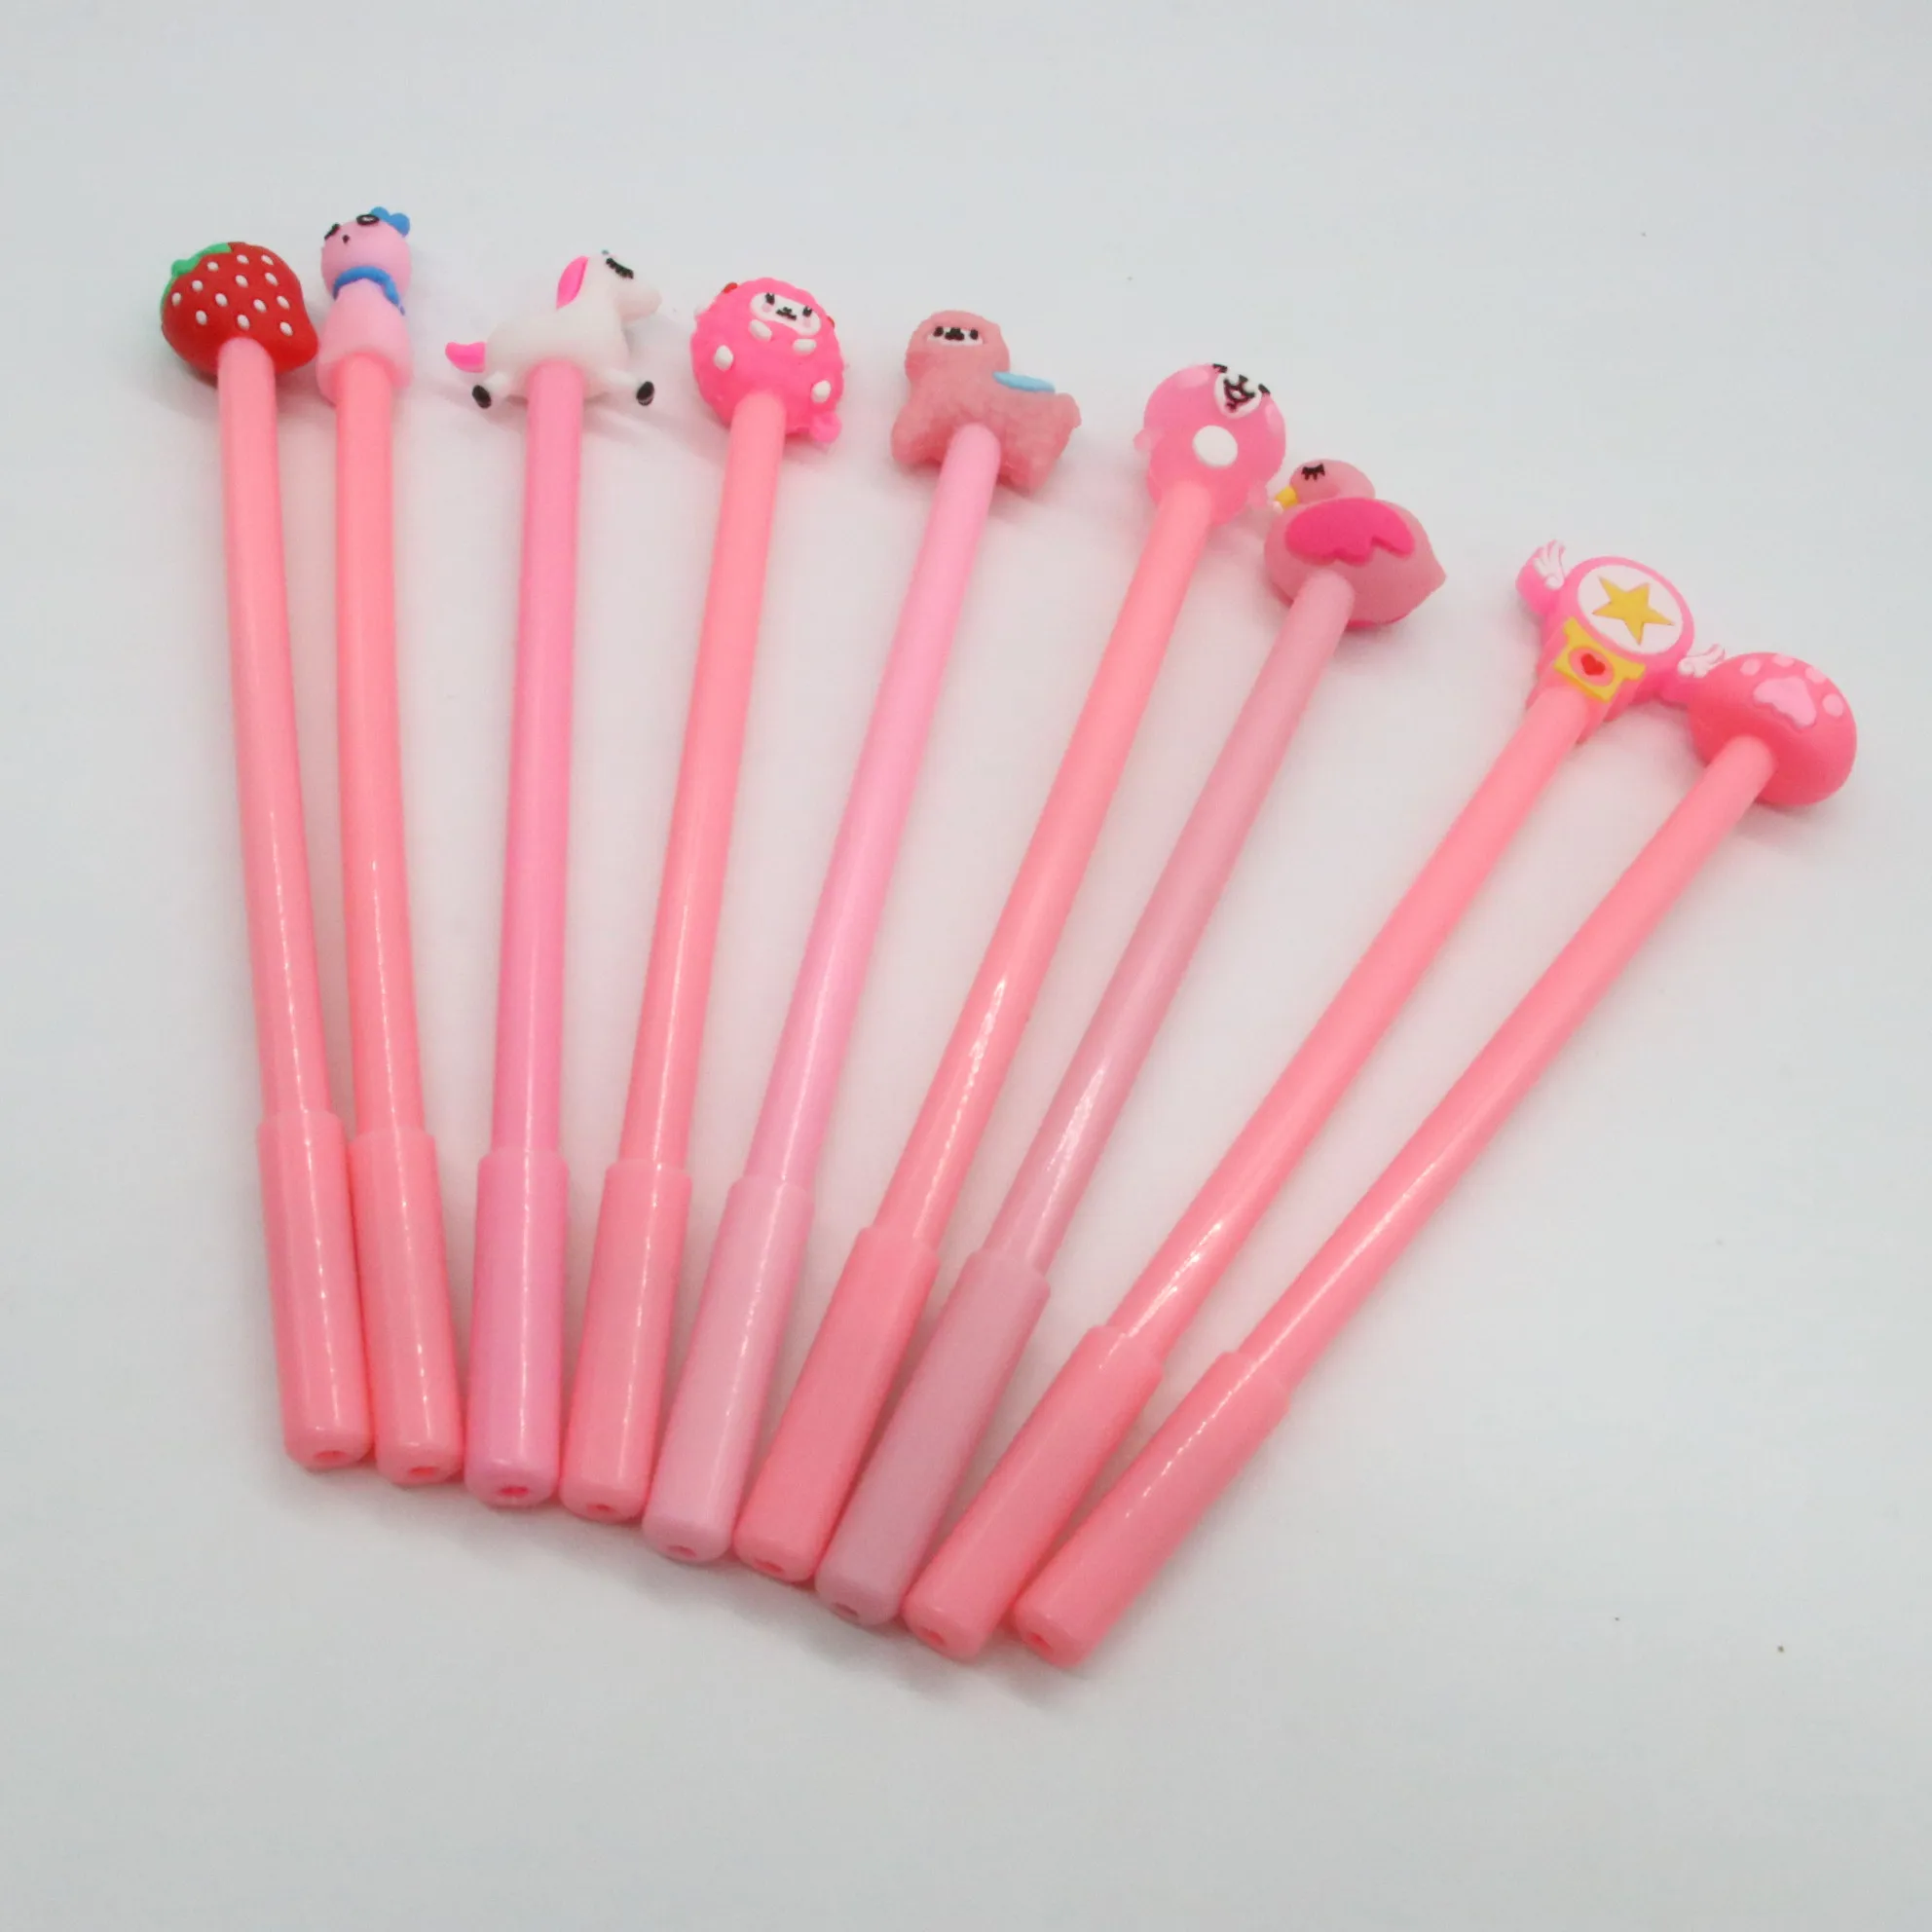 12 piece/bags пластиковые стержни для гелевых ручек каваи ручки кактус милые ручки животных оптом для студентов